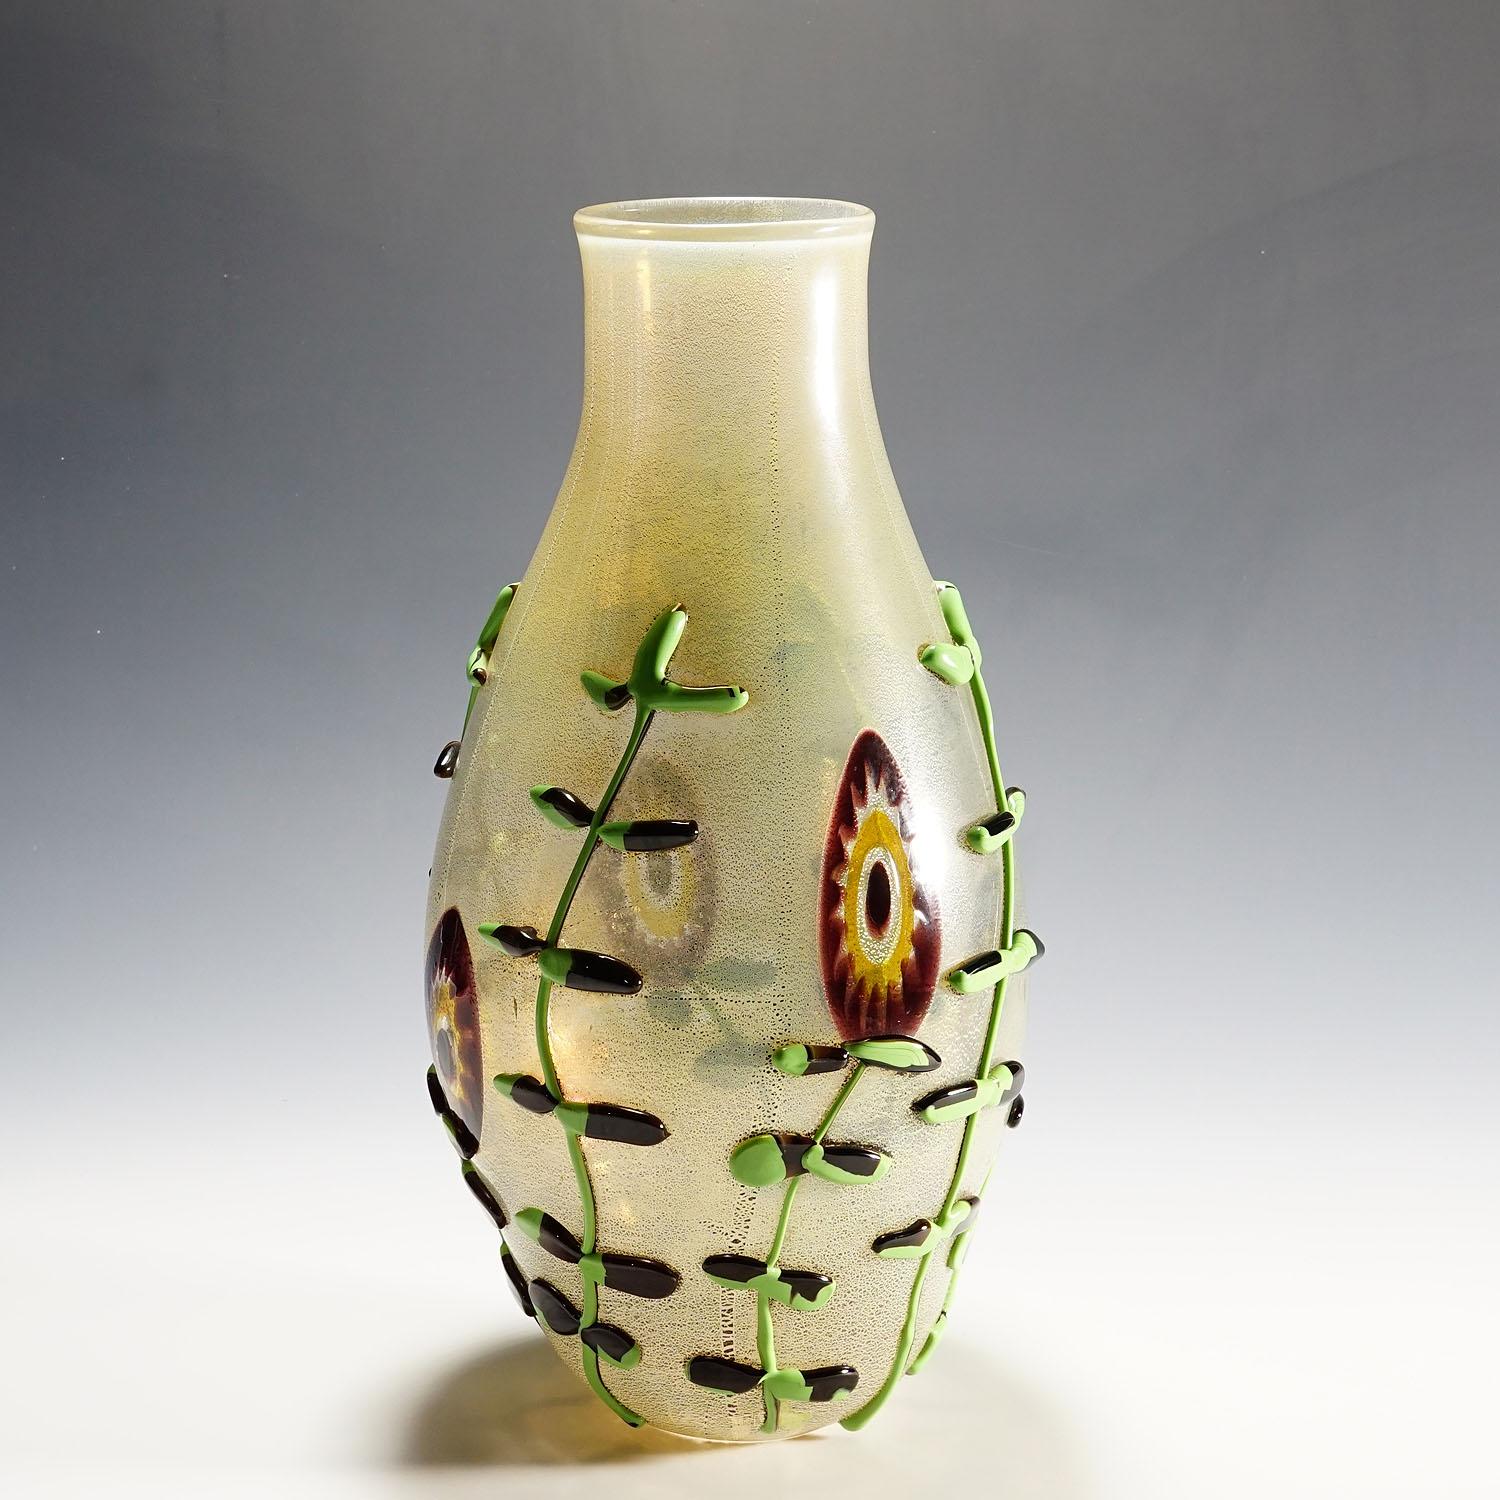 Monumentale Kunstglasvase von Licio Zanetti, Murano, ca. 1970er Jahre

Eine große Vase aus Kunstglas, handgefertigt von Glasmeister Licio Zanetti, ca. 1970er Jahre für Zanetti Murano SRL. Freigeformter Korpus aus klarem Glas, verziert mit